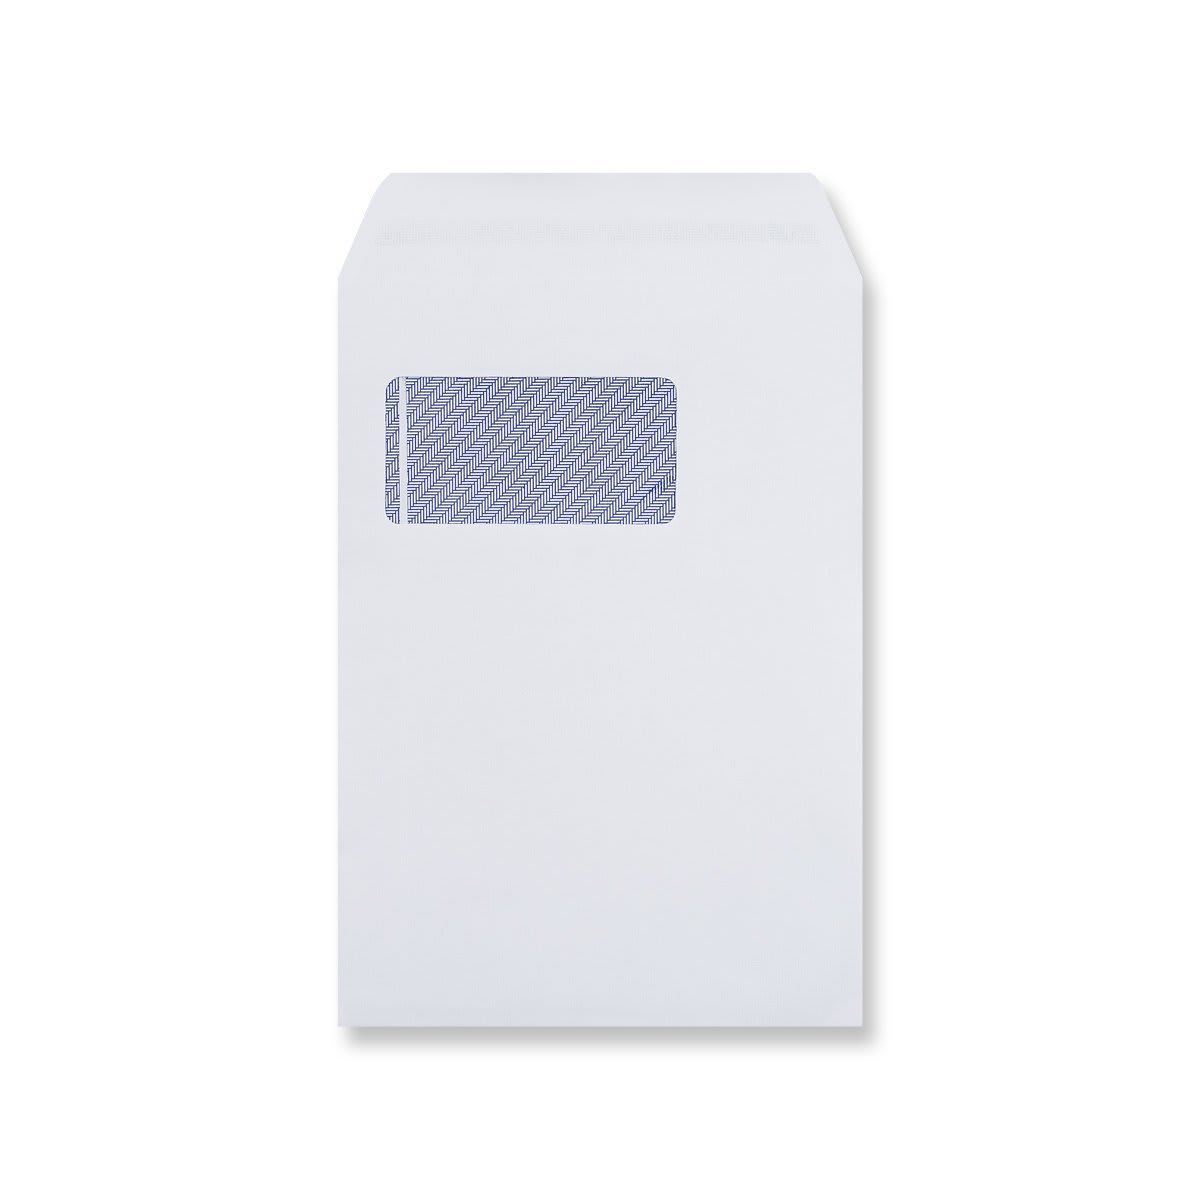 229x162mm C5 Bijeli džep 90gsm Samozapečaćene neprozirne vertikalne omotnice prozora